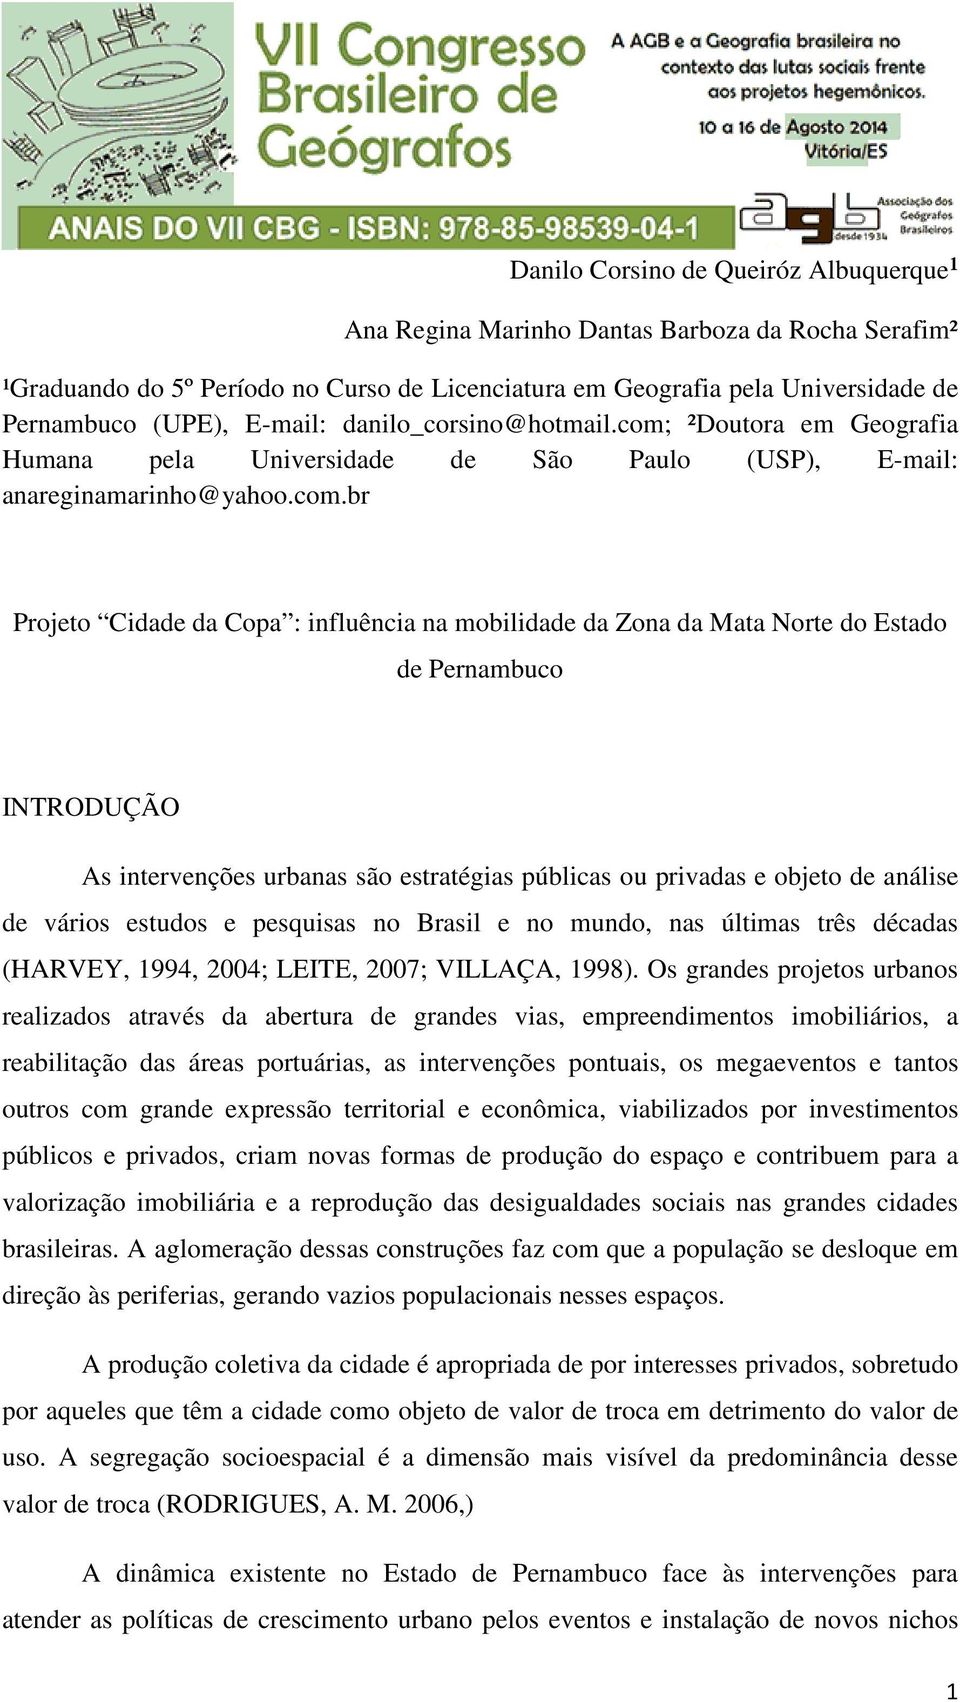 ²Doutora em Geografia Humana pela Universidade de São Paulo (USP), E-mail: anareginamarinho@yahoo.com.